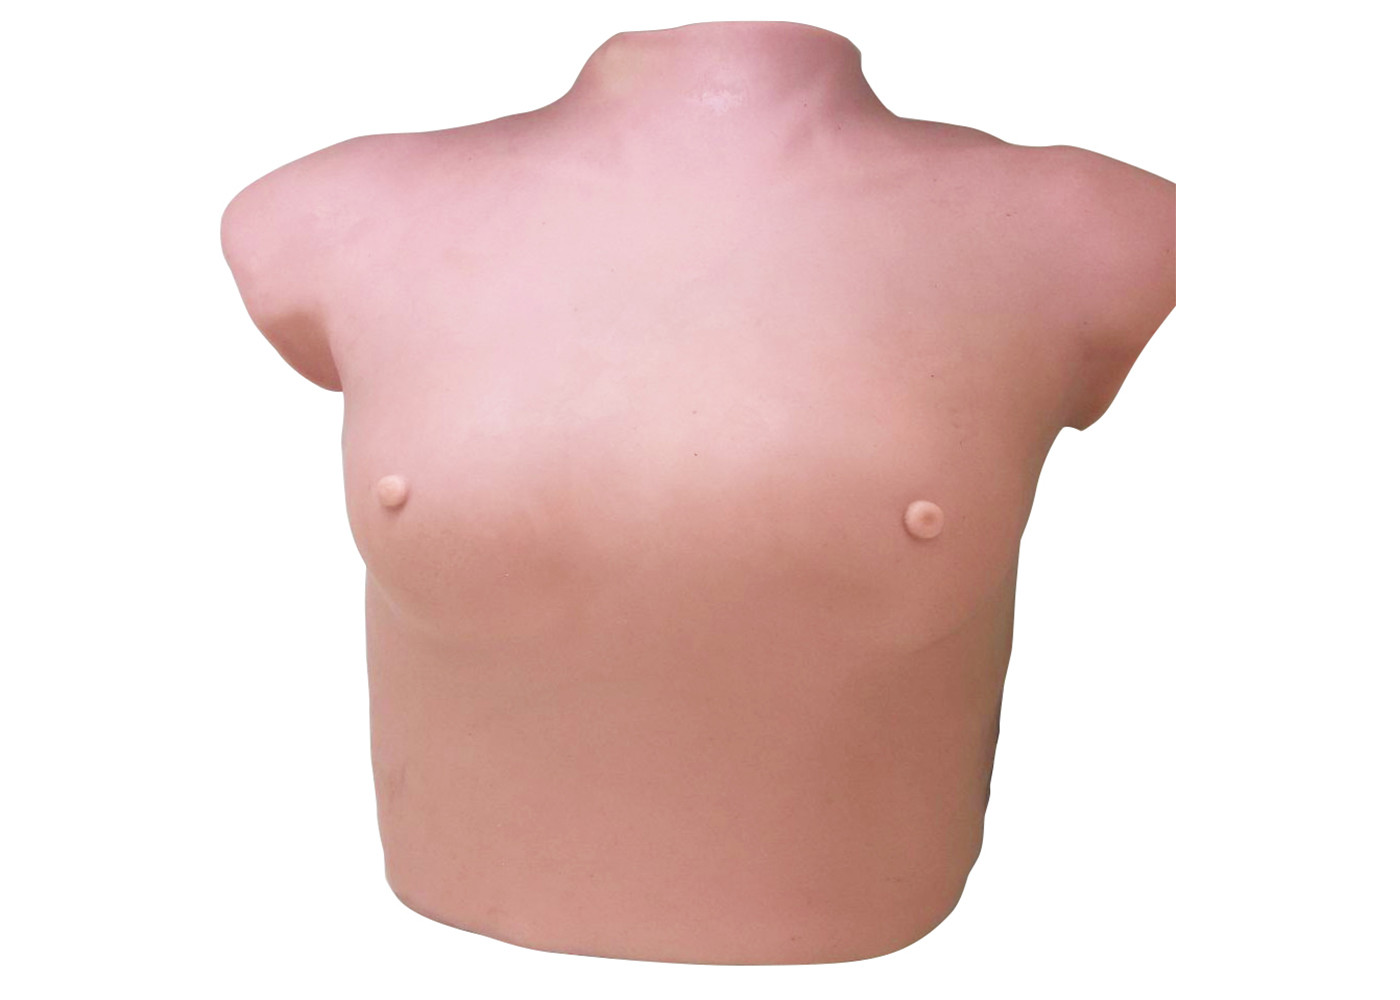 Pecho femenino del tamaño del modreate del simulador del hospital del cuerpo superior para el examen del tumor del pecho